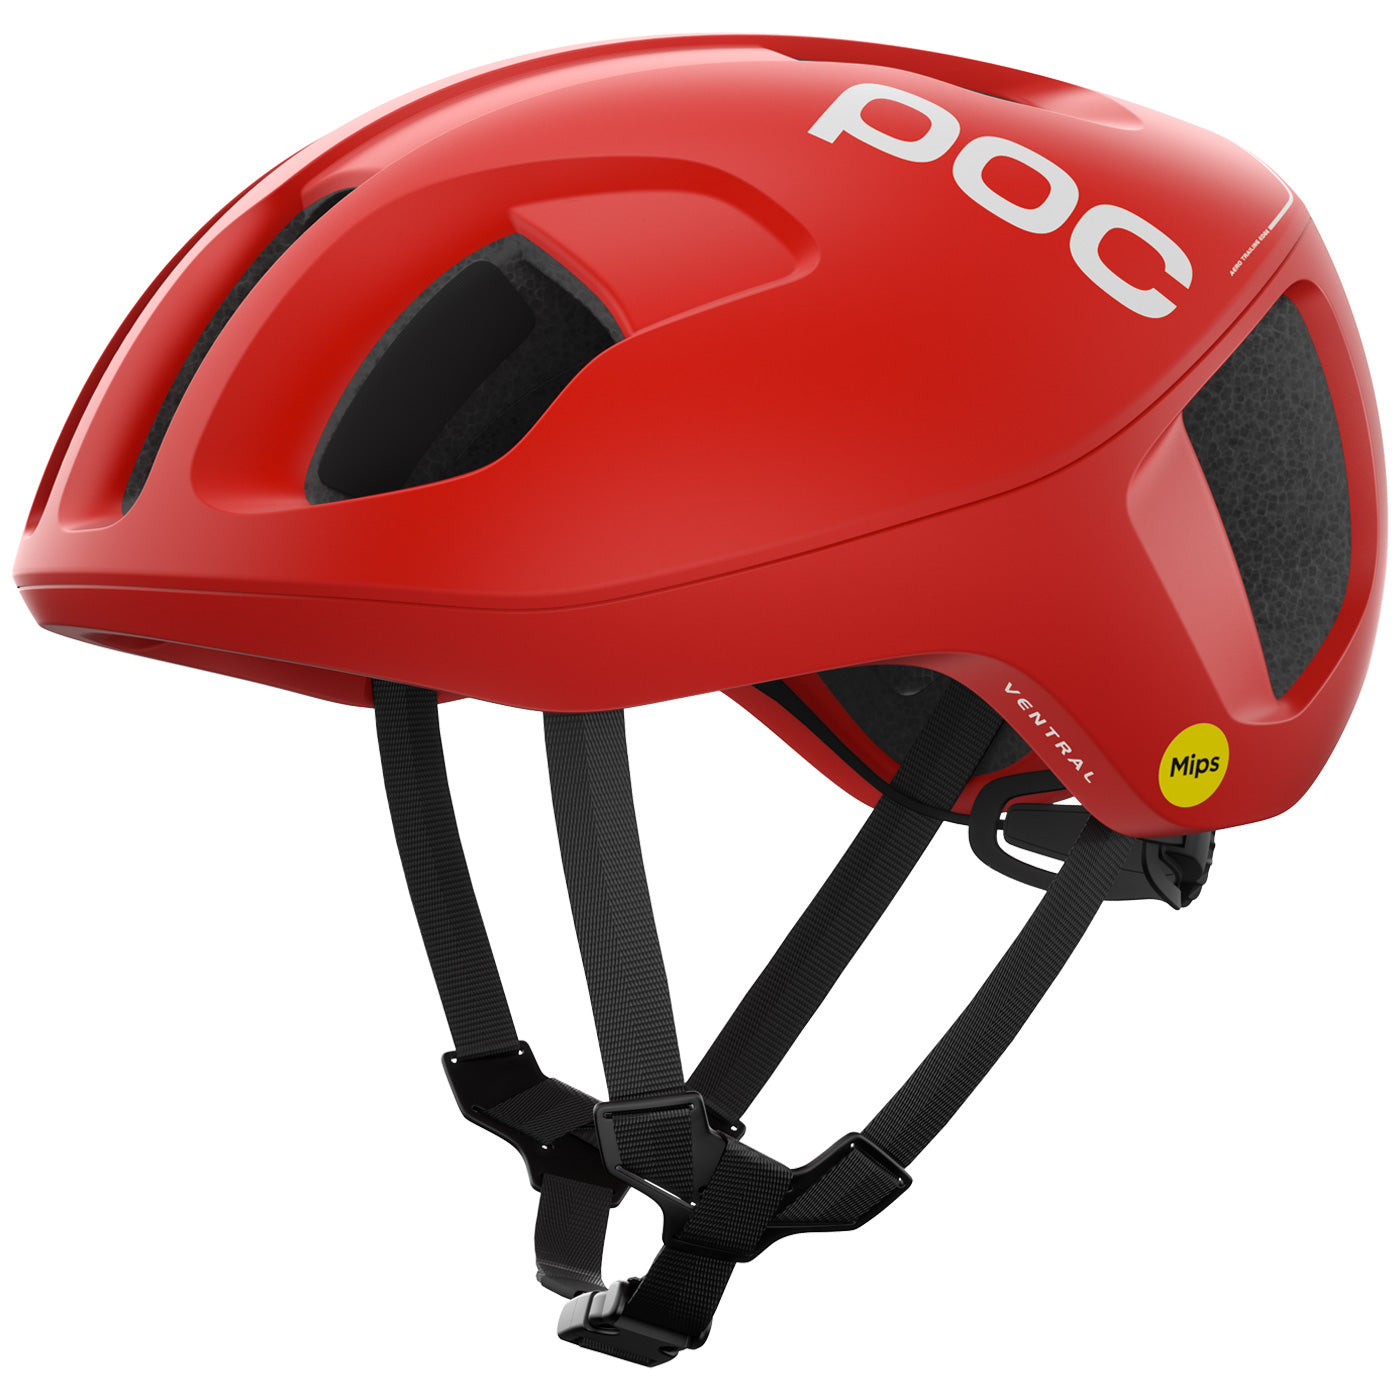 POC Ventral Air SPIN: un casco ligero, seguro y